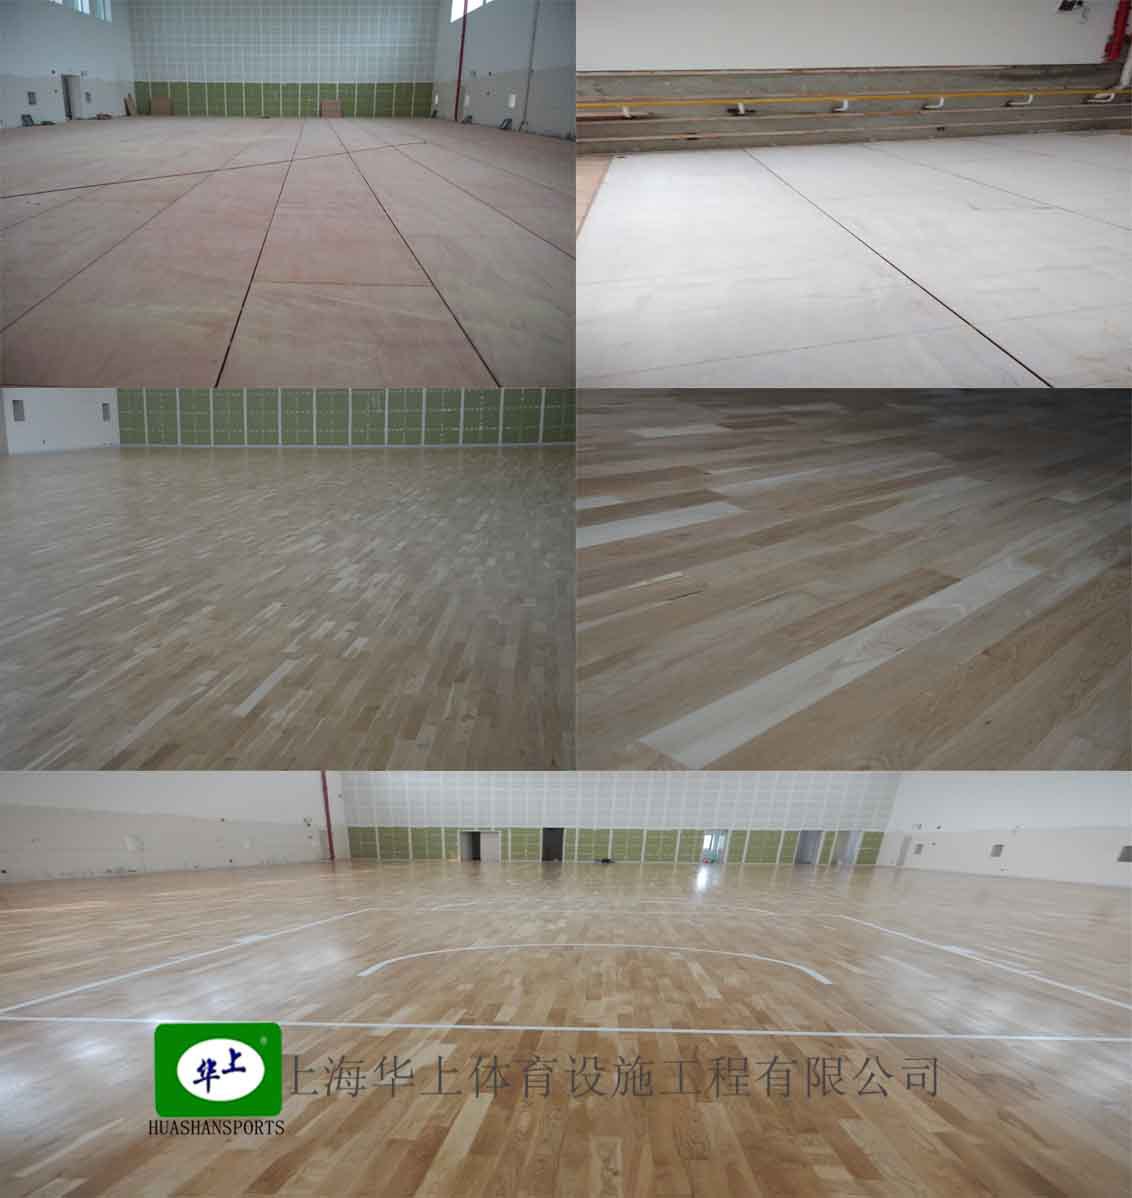 厂家直供运动木地板/体育木地板/篮球场木地板,可施工